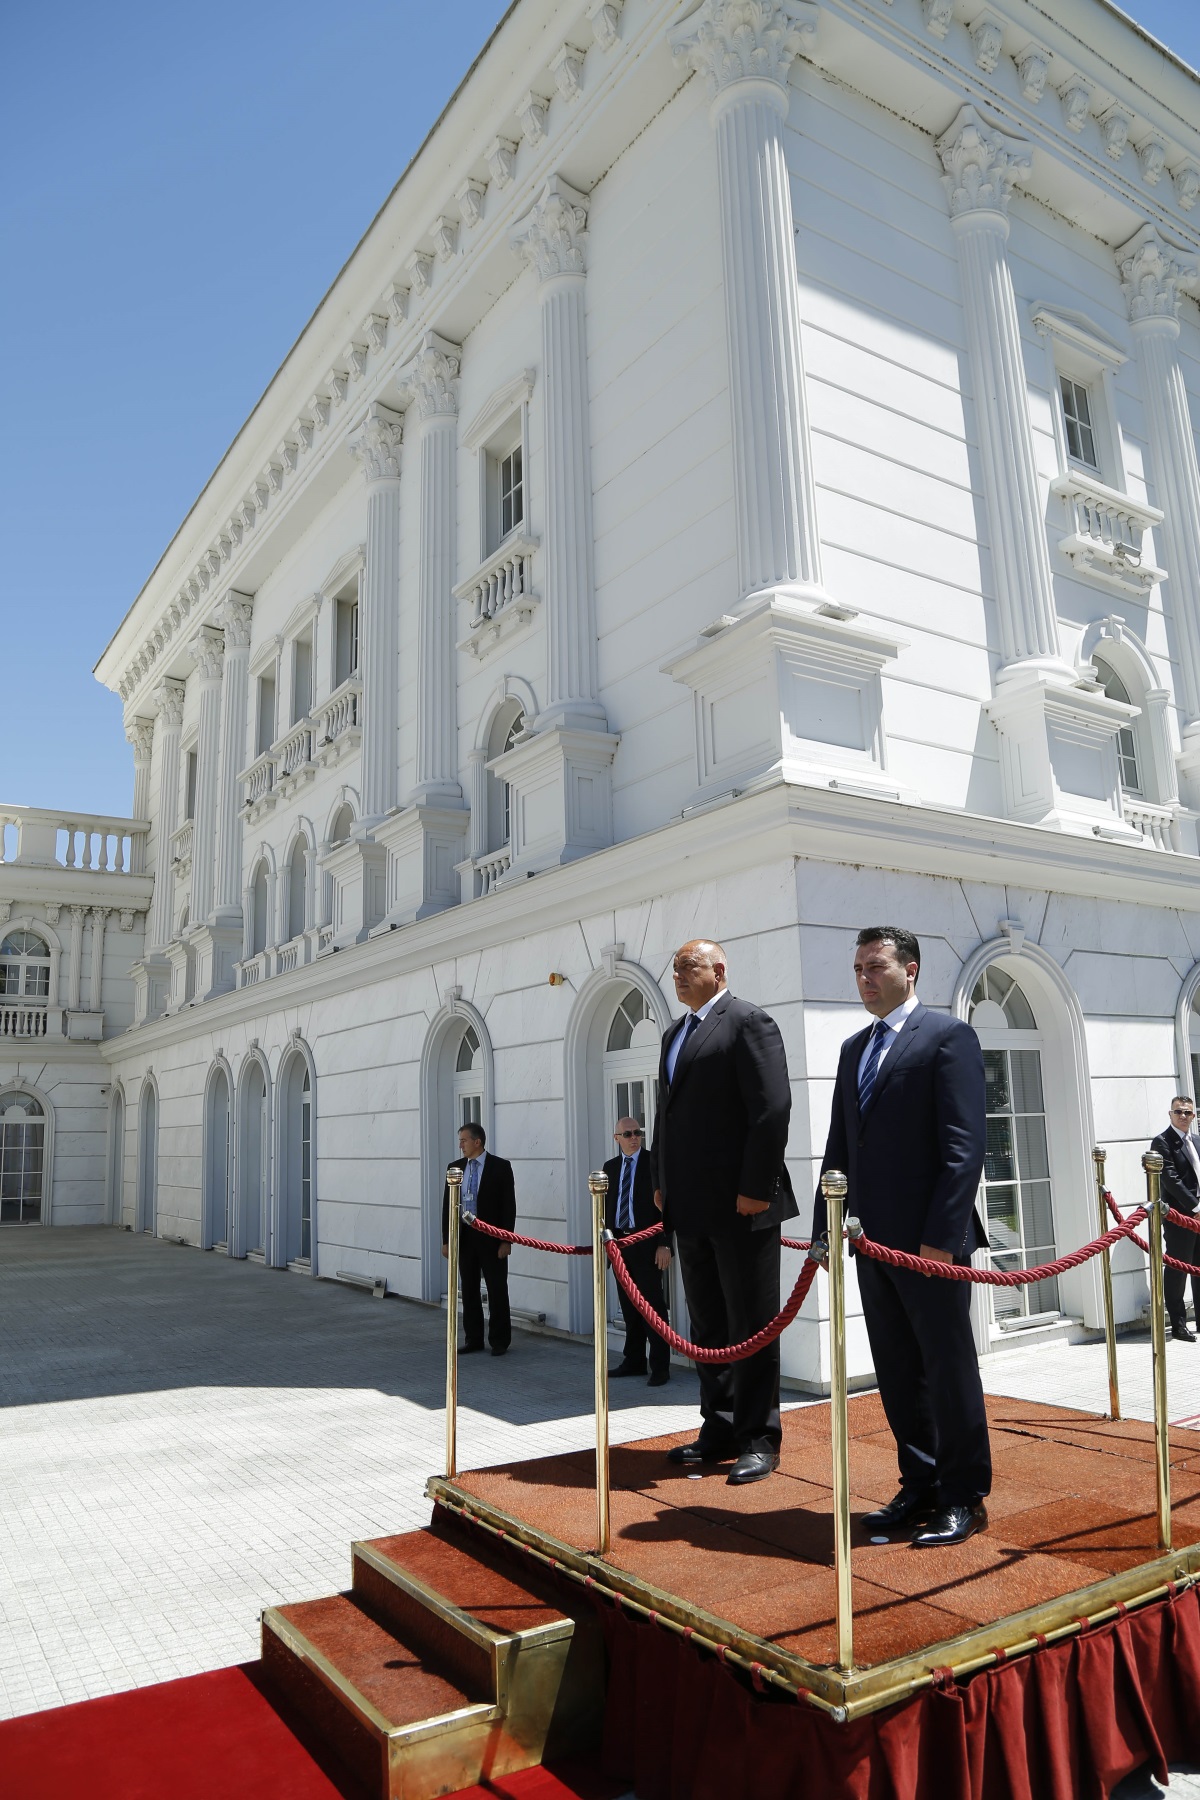 Договорът за приятелство, добросъседство и сътрудничество между България и Македония е факт. Премиерите Зоран Заев и Бойко Борисов положиха подписите си в Министерския съвет в Скопие, при небивал интерес от медиите.